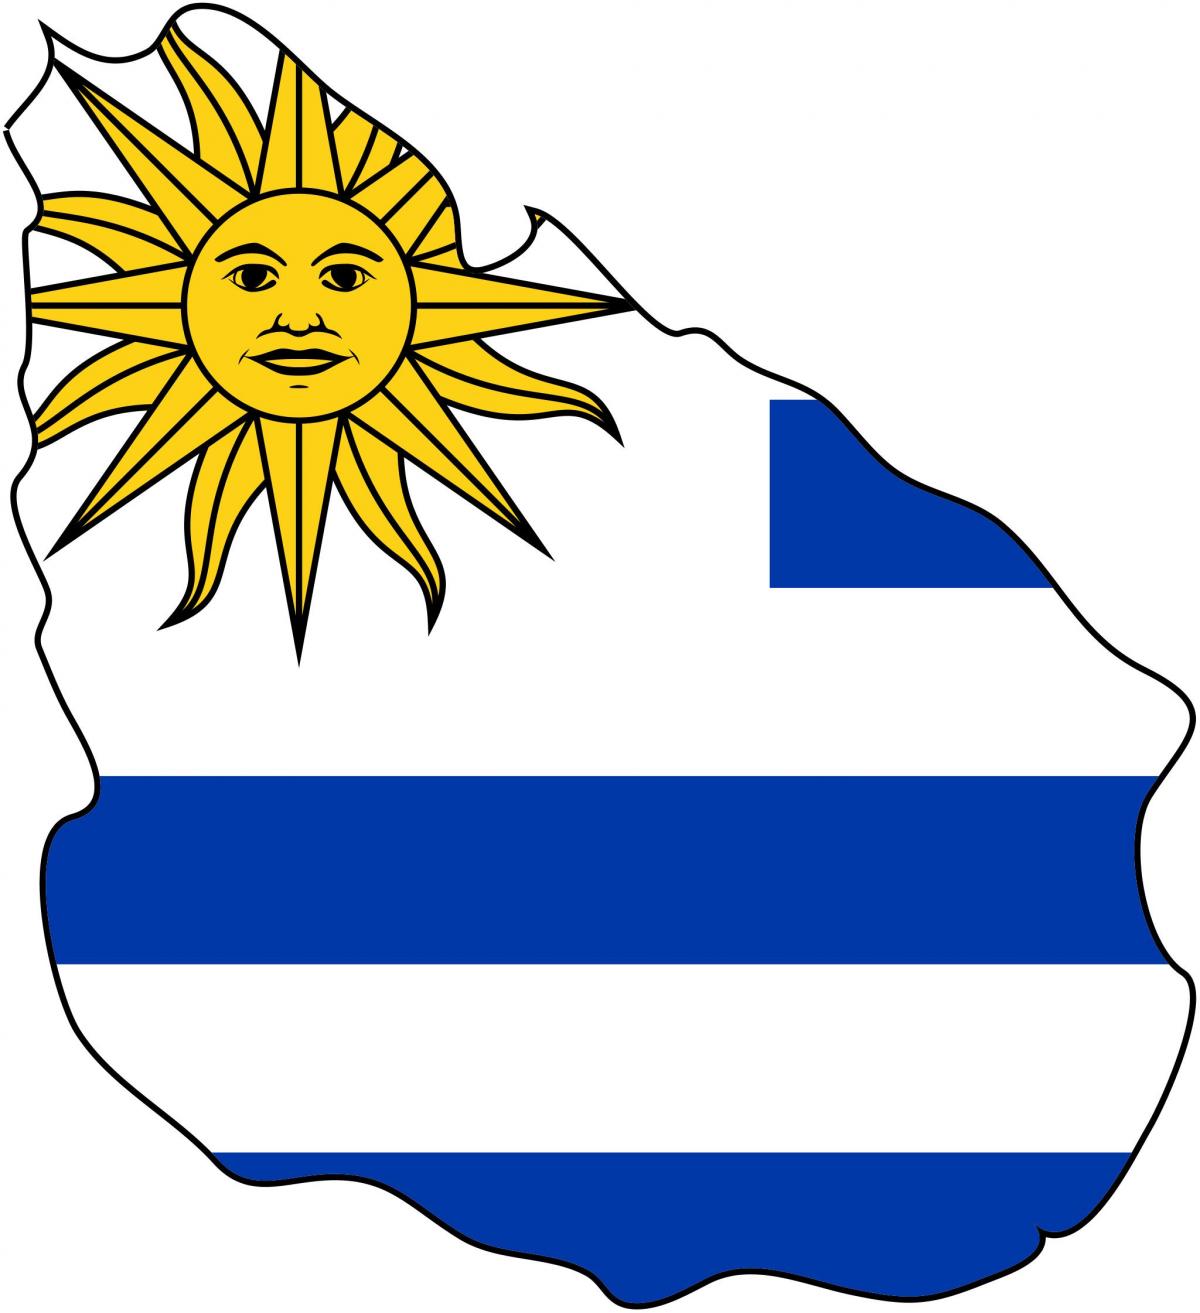 نقشہ یوراگوئے کے پرچم